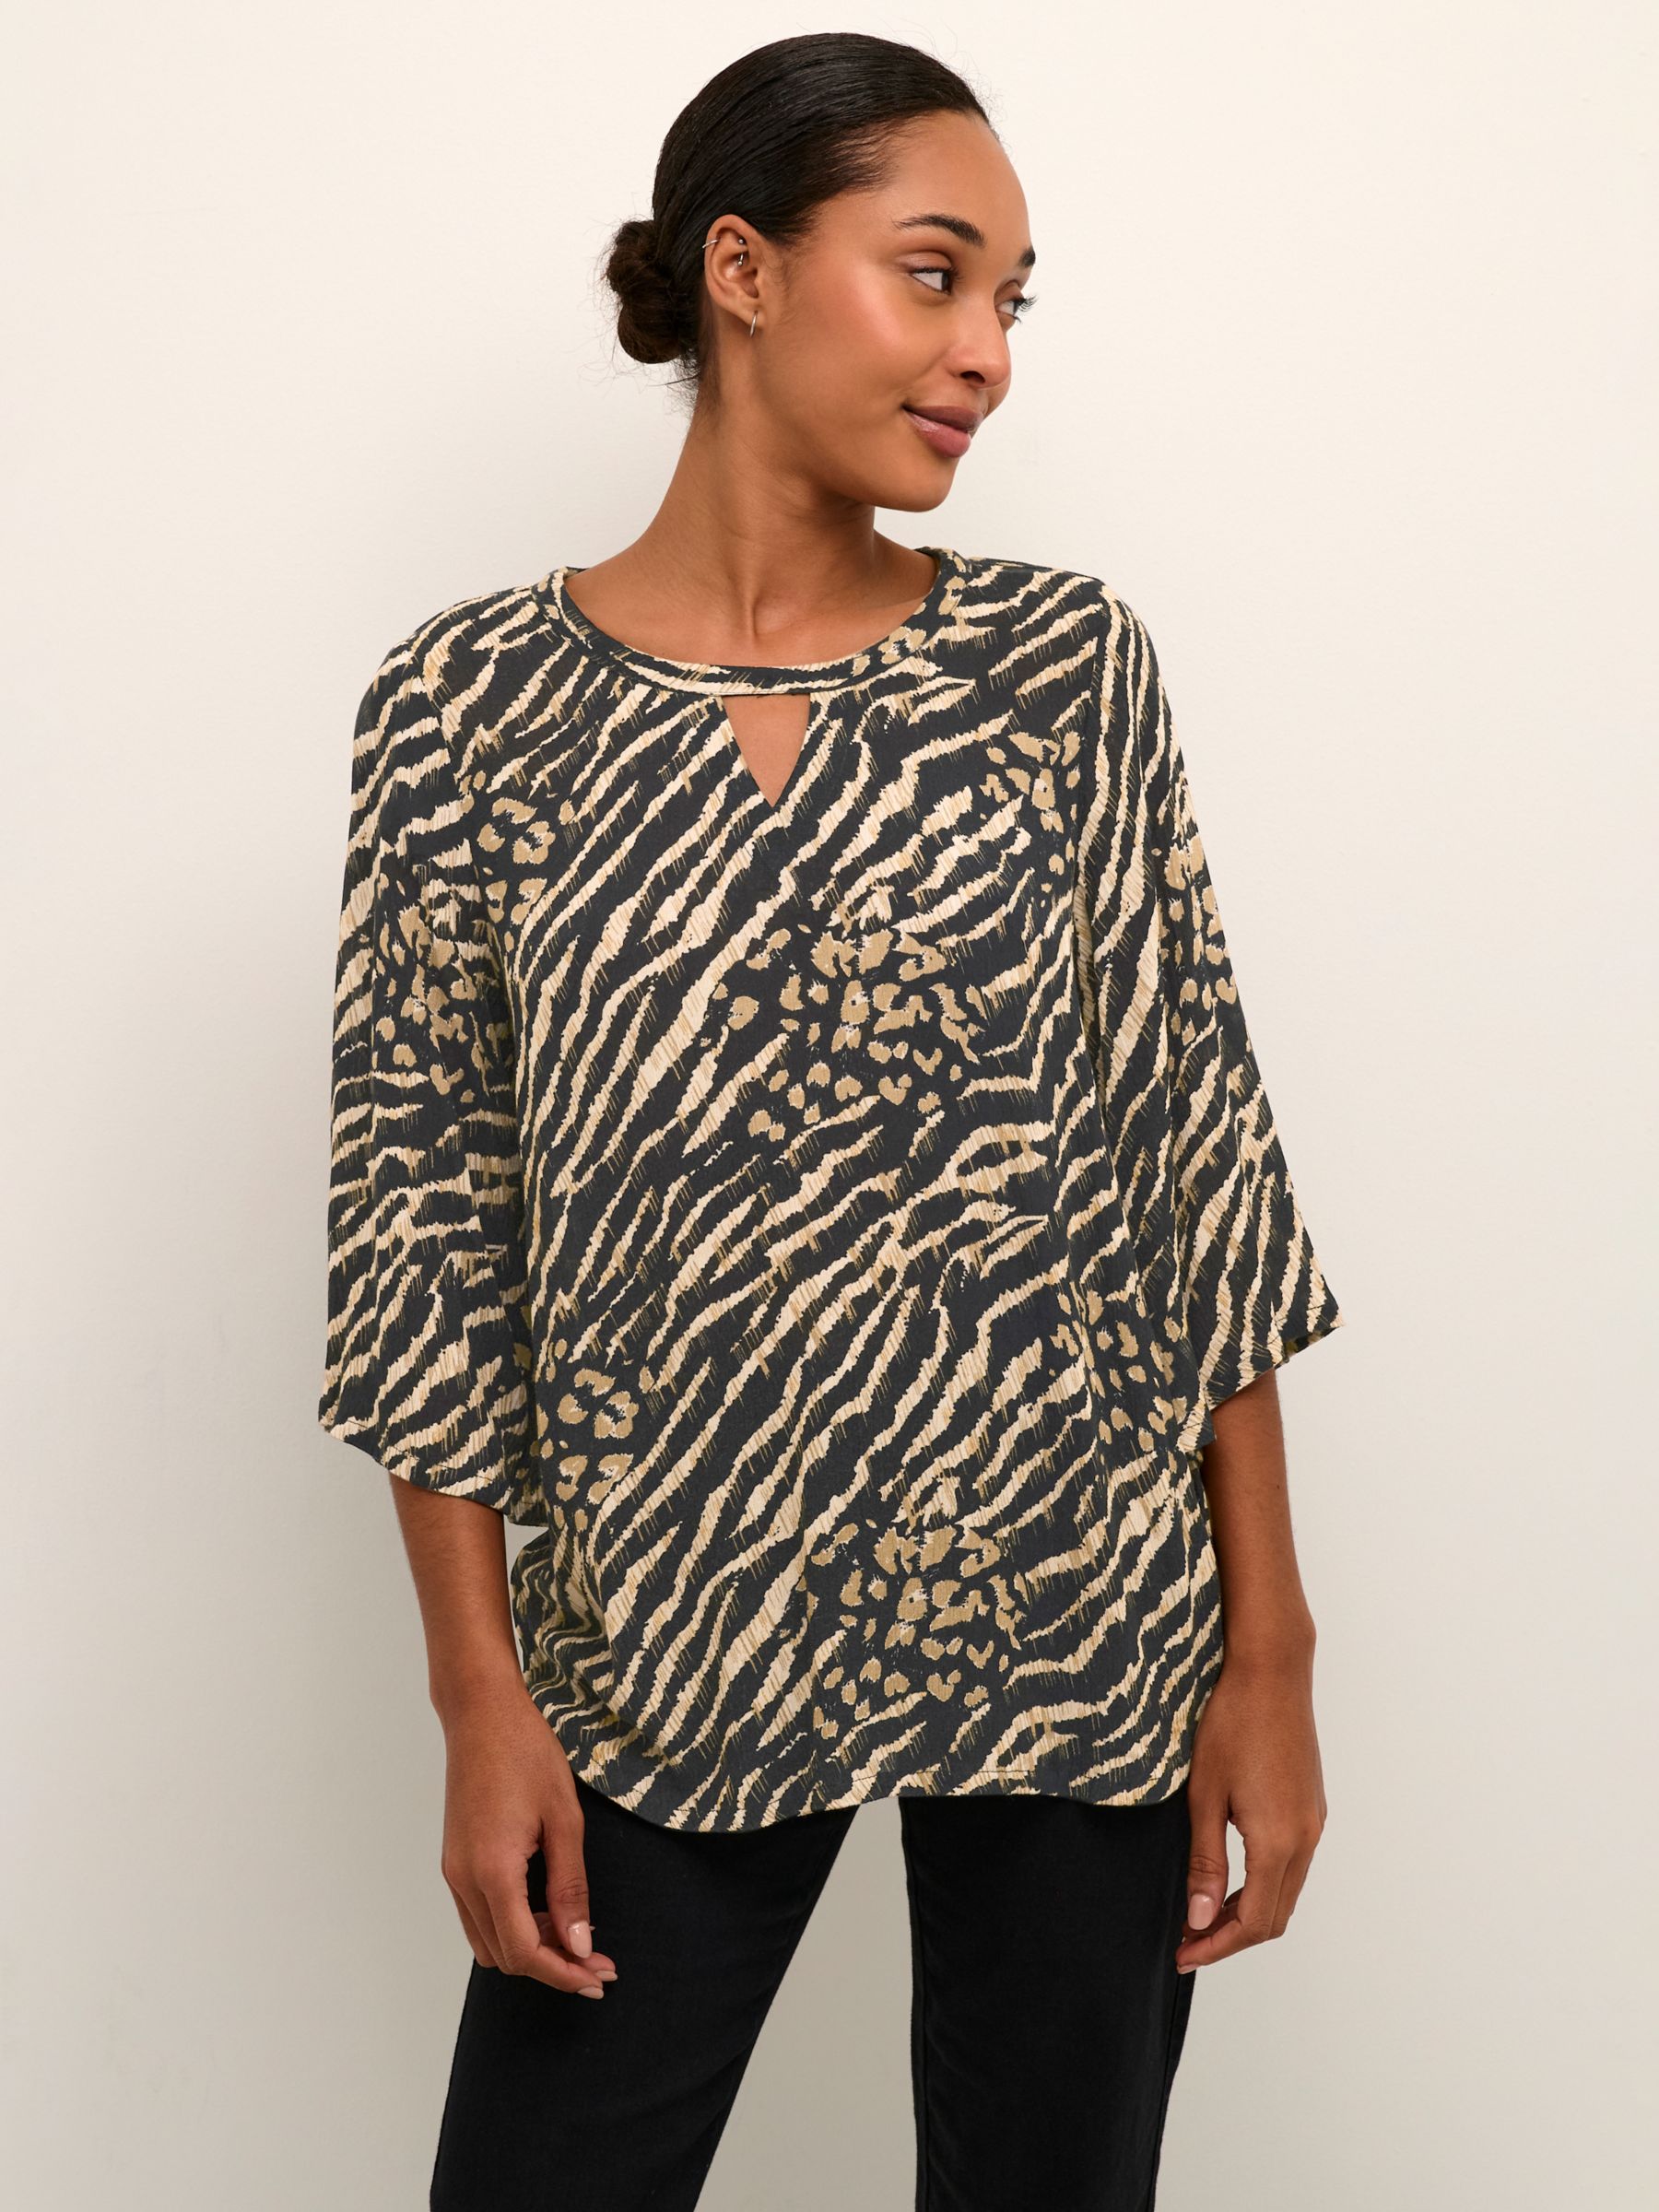 Karina Янтарная блузка с принтом KAFFE, коричневый